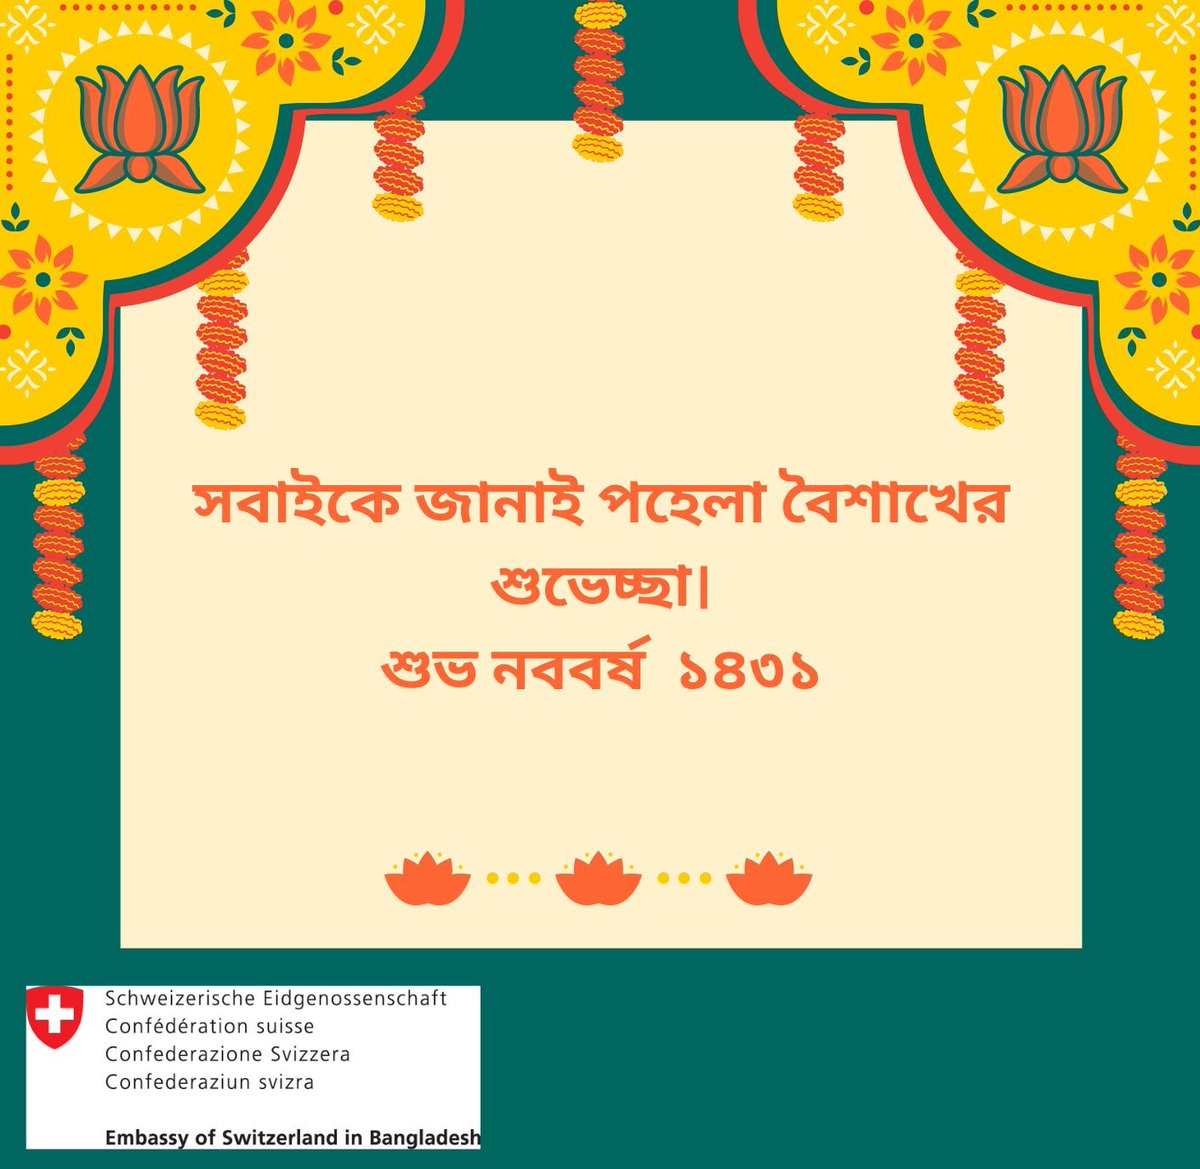 Happy Bangla New Year 1431! 🇧🇩🎉🇨🇭
The Embassy of Switzerland in Bangladesh wishes you a joyful Pohela Boishak celebration with your family and friends!
#SwissinBD #PohelaBoishak